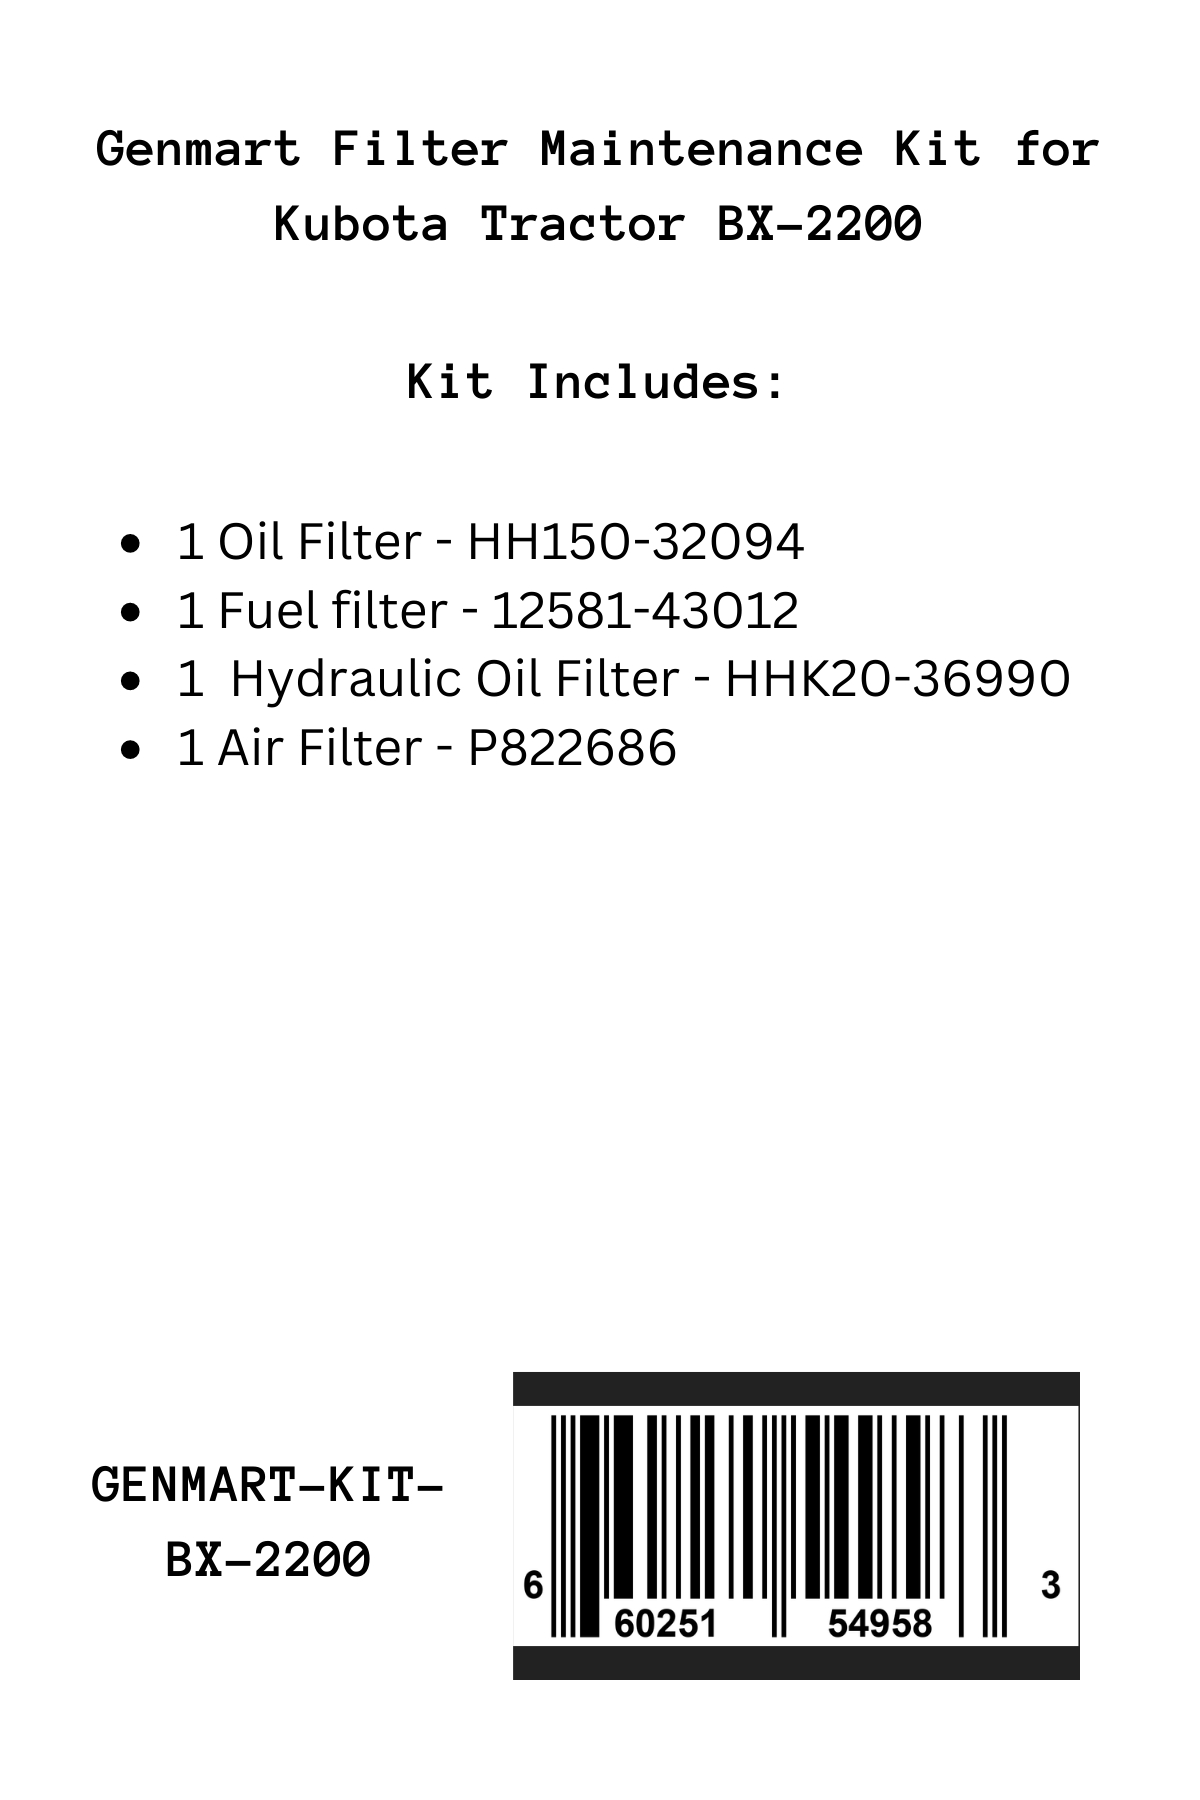 Genmart Maintenance Kit for Kubota Tractor BX-2200